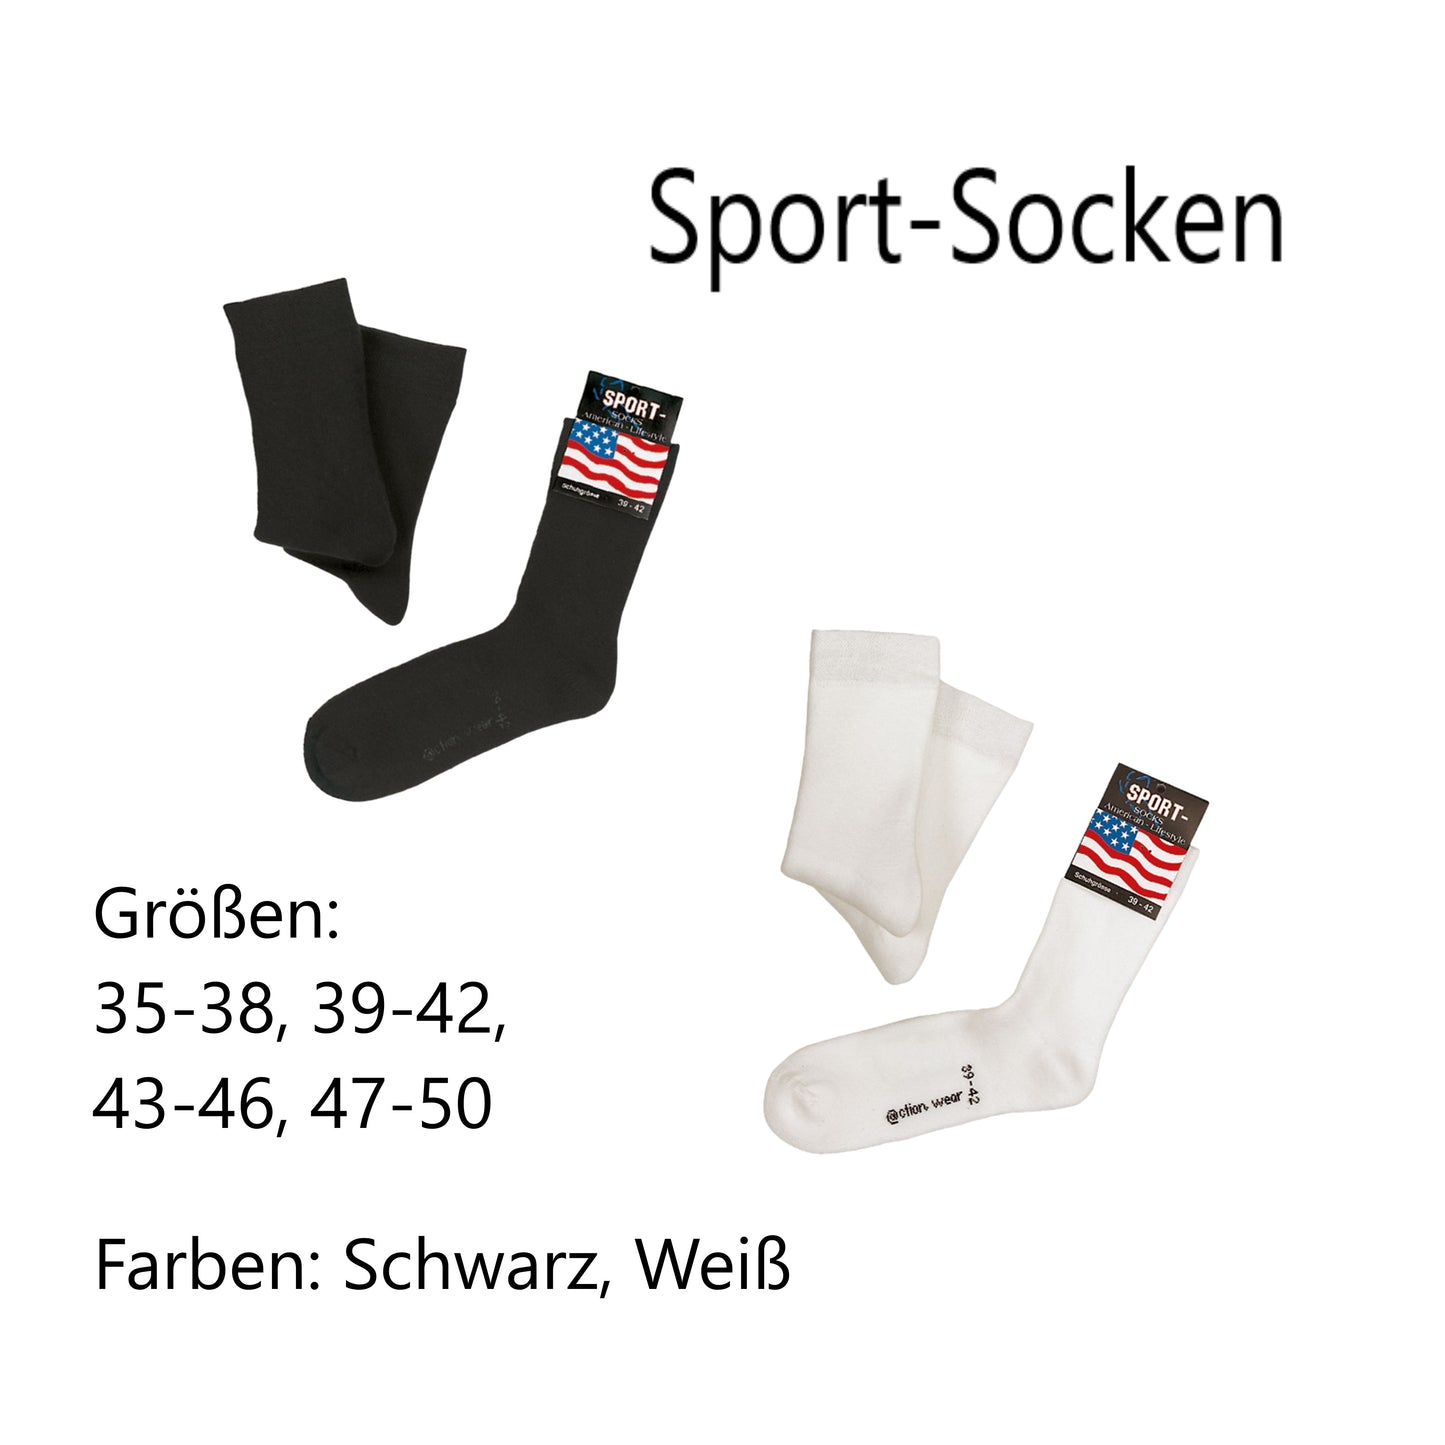 Sport-Socken mit Namen bestickt